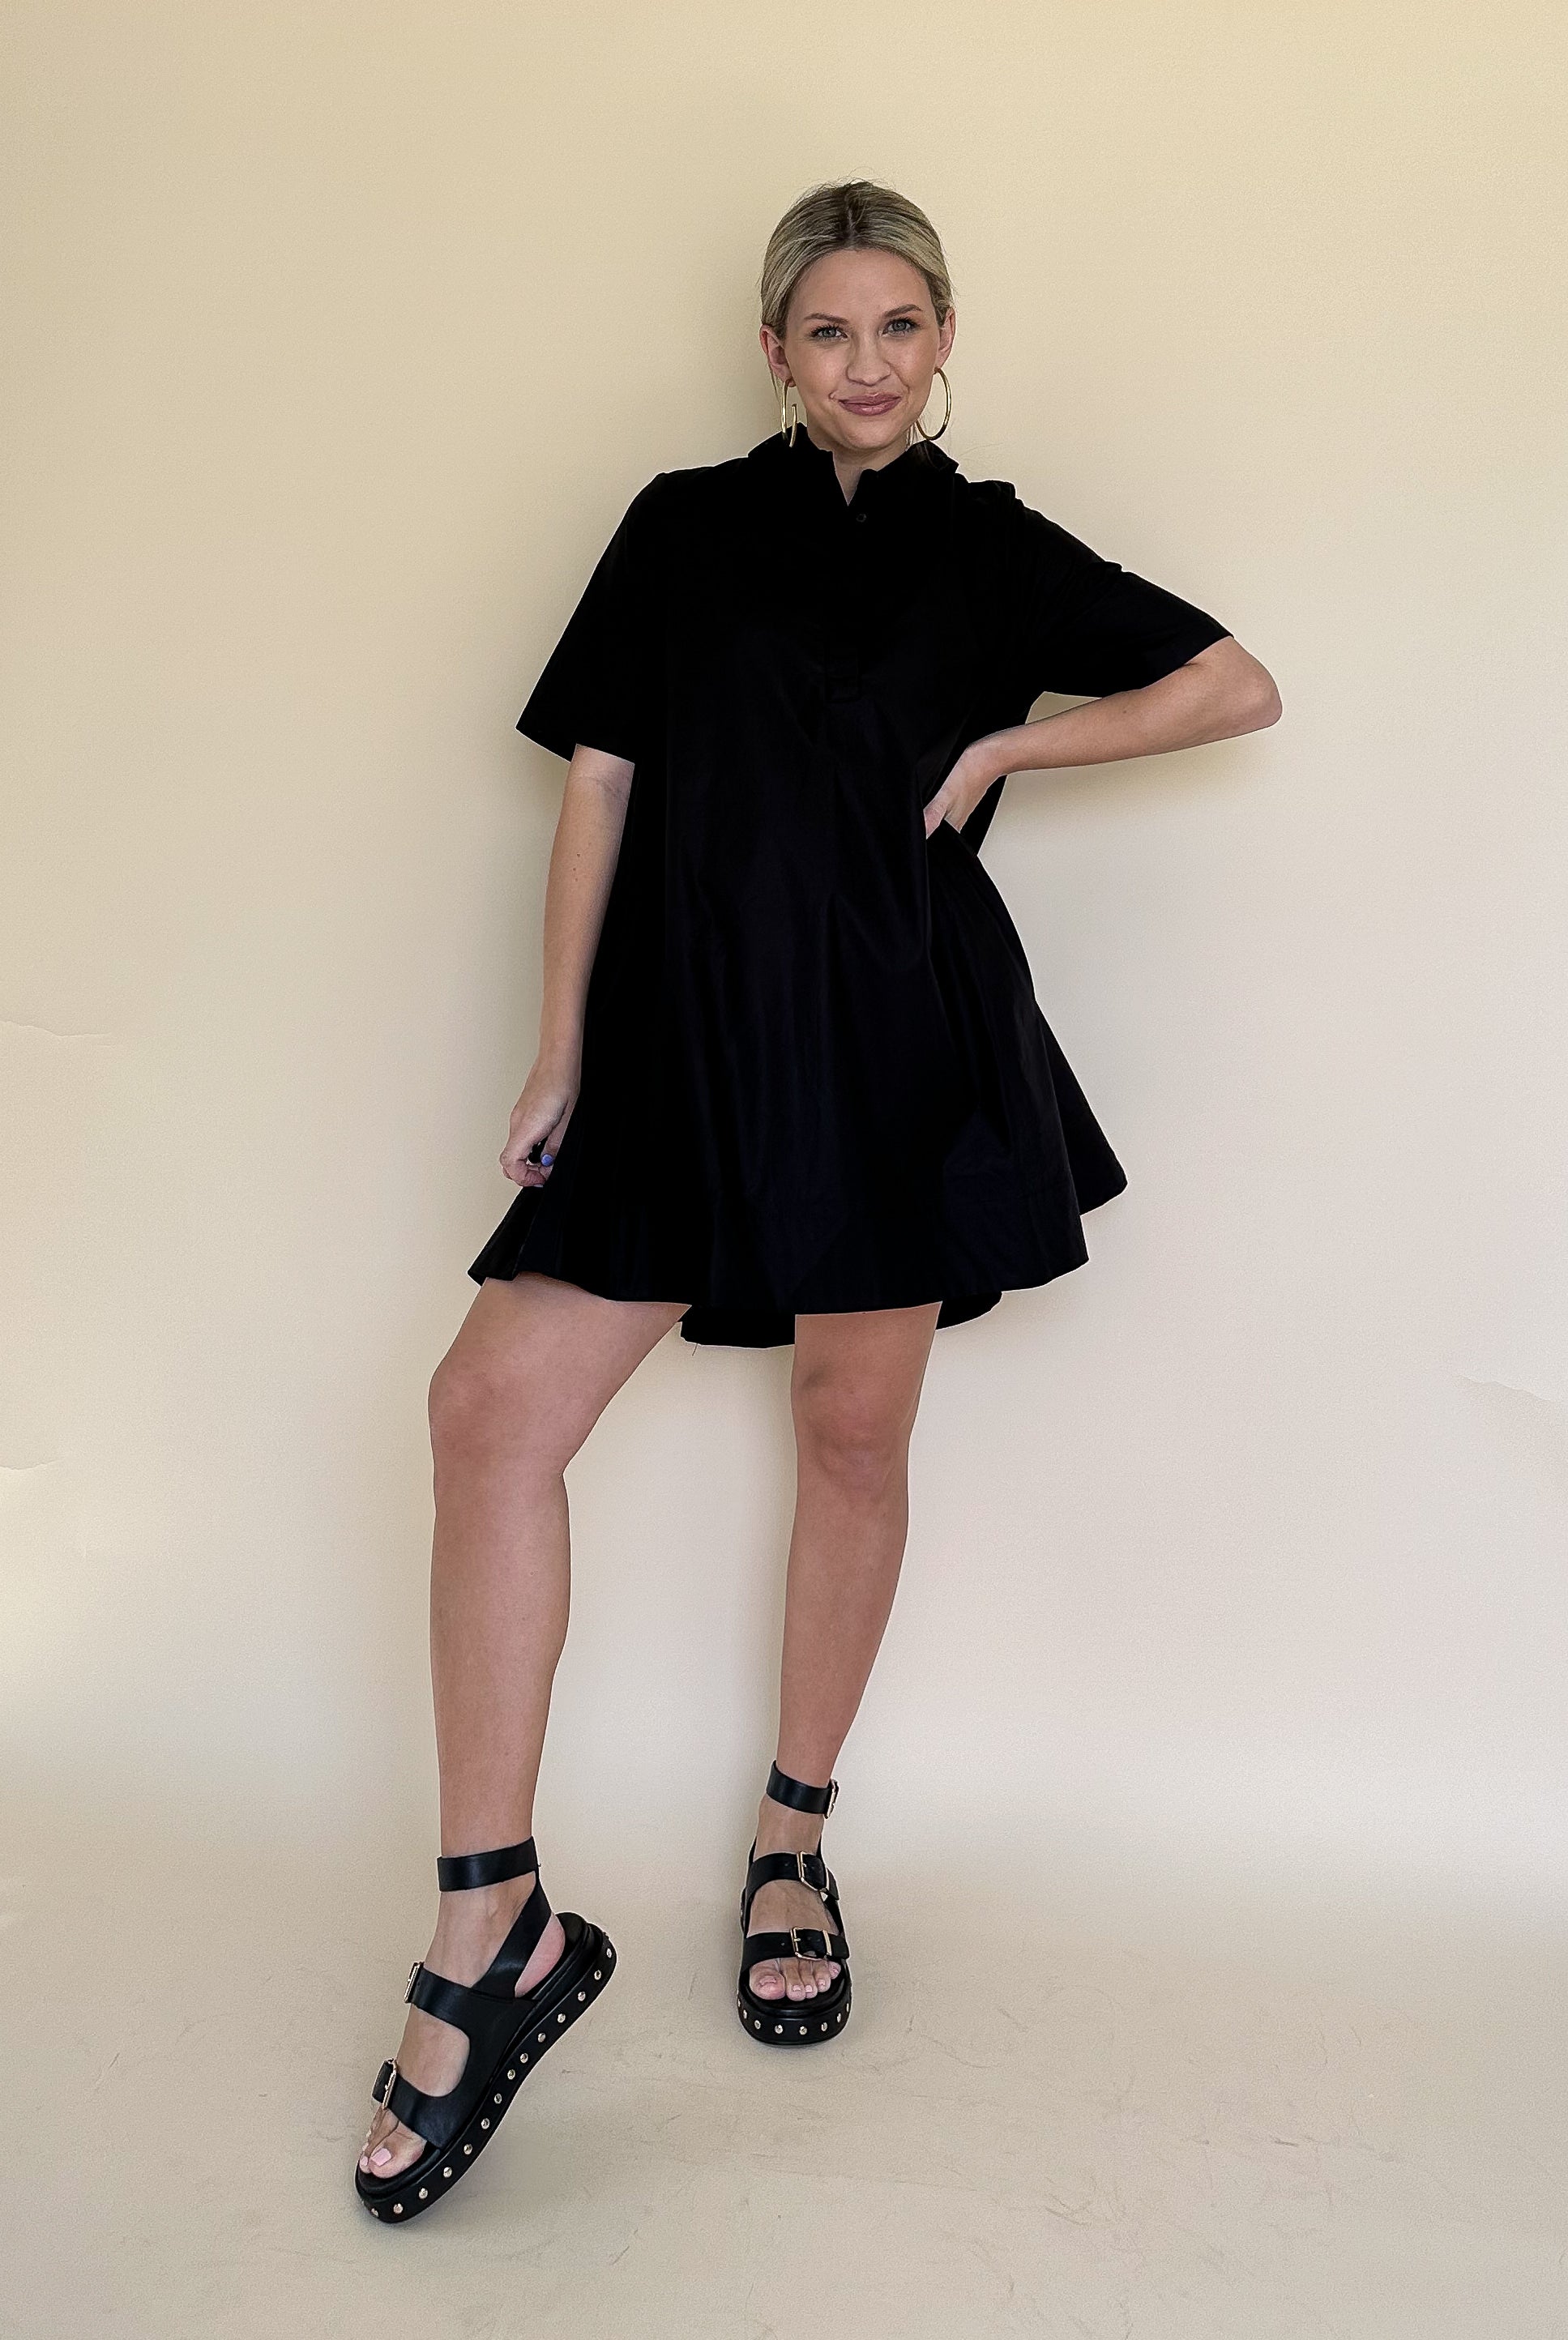 august apparel black mini dress